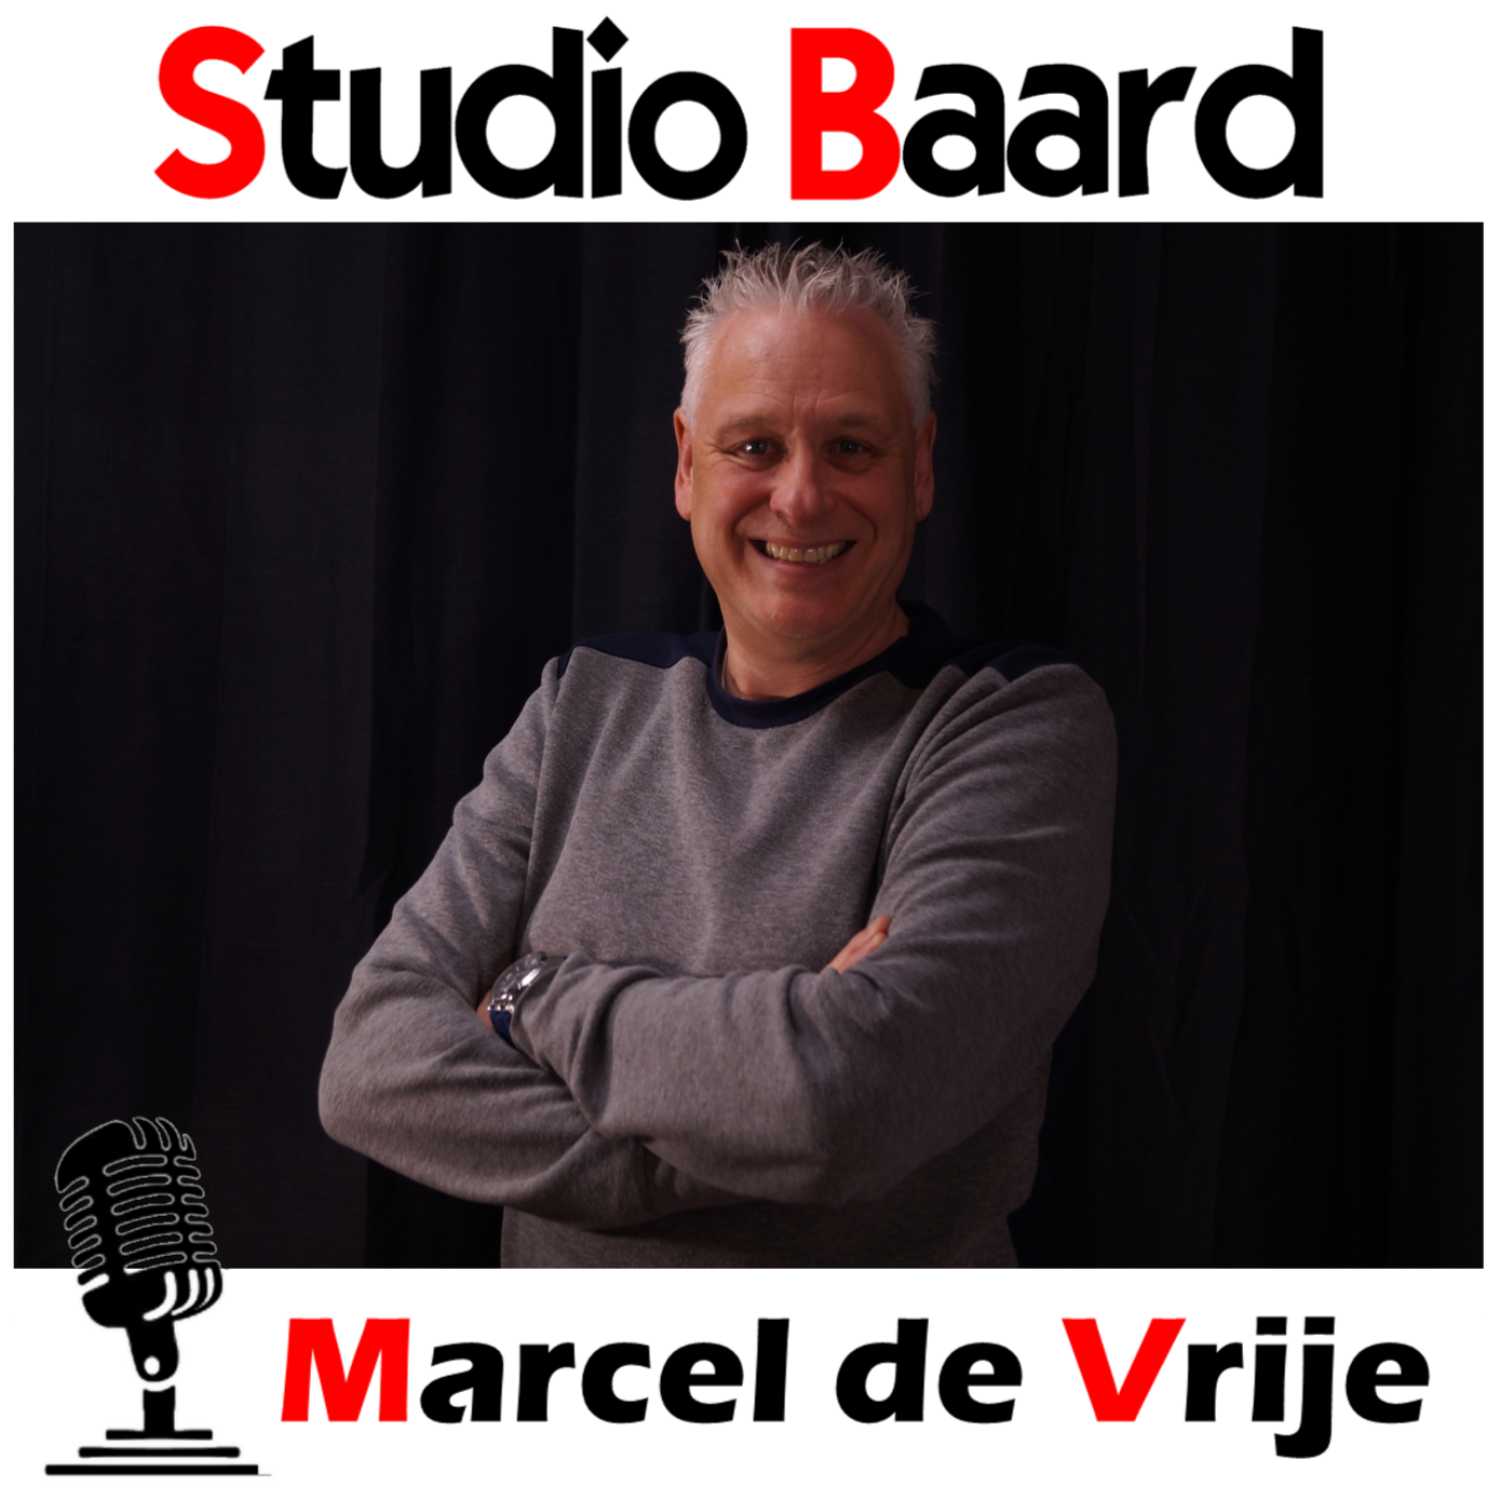 Studio Baard met Marcel de Vrije (deel 2)